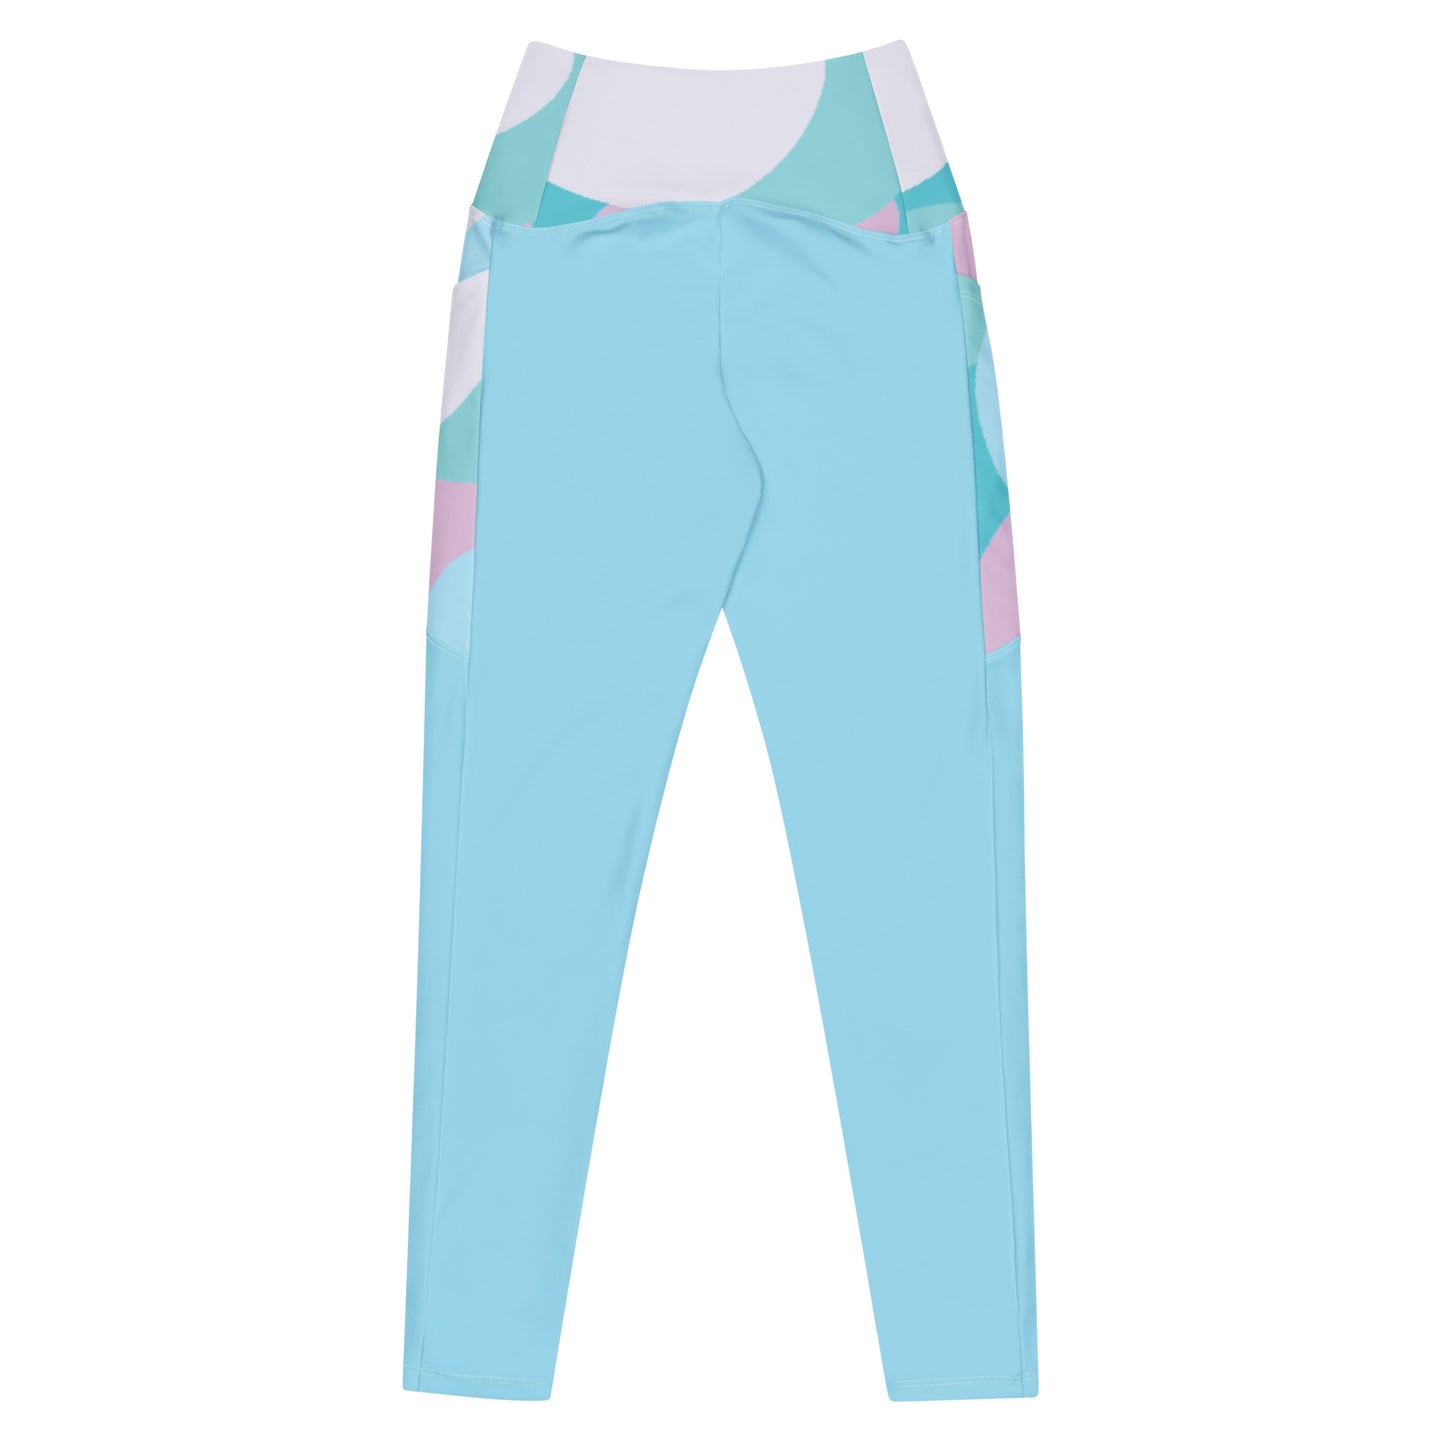 Women’s leggings, color block pocket leggings for gym